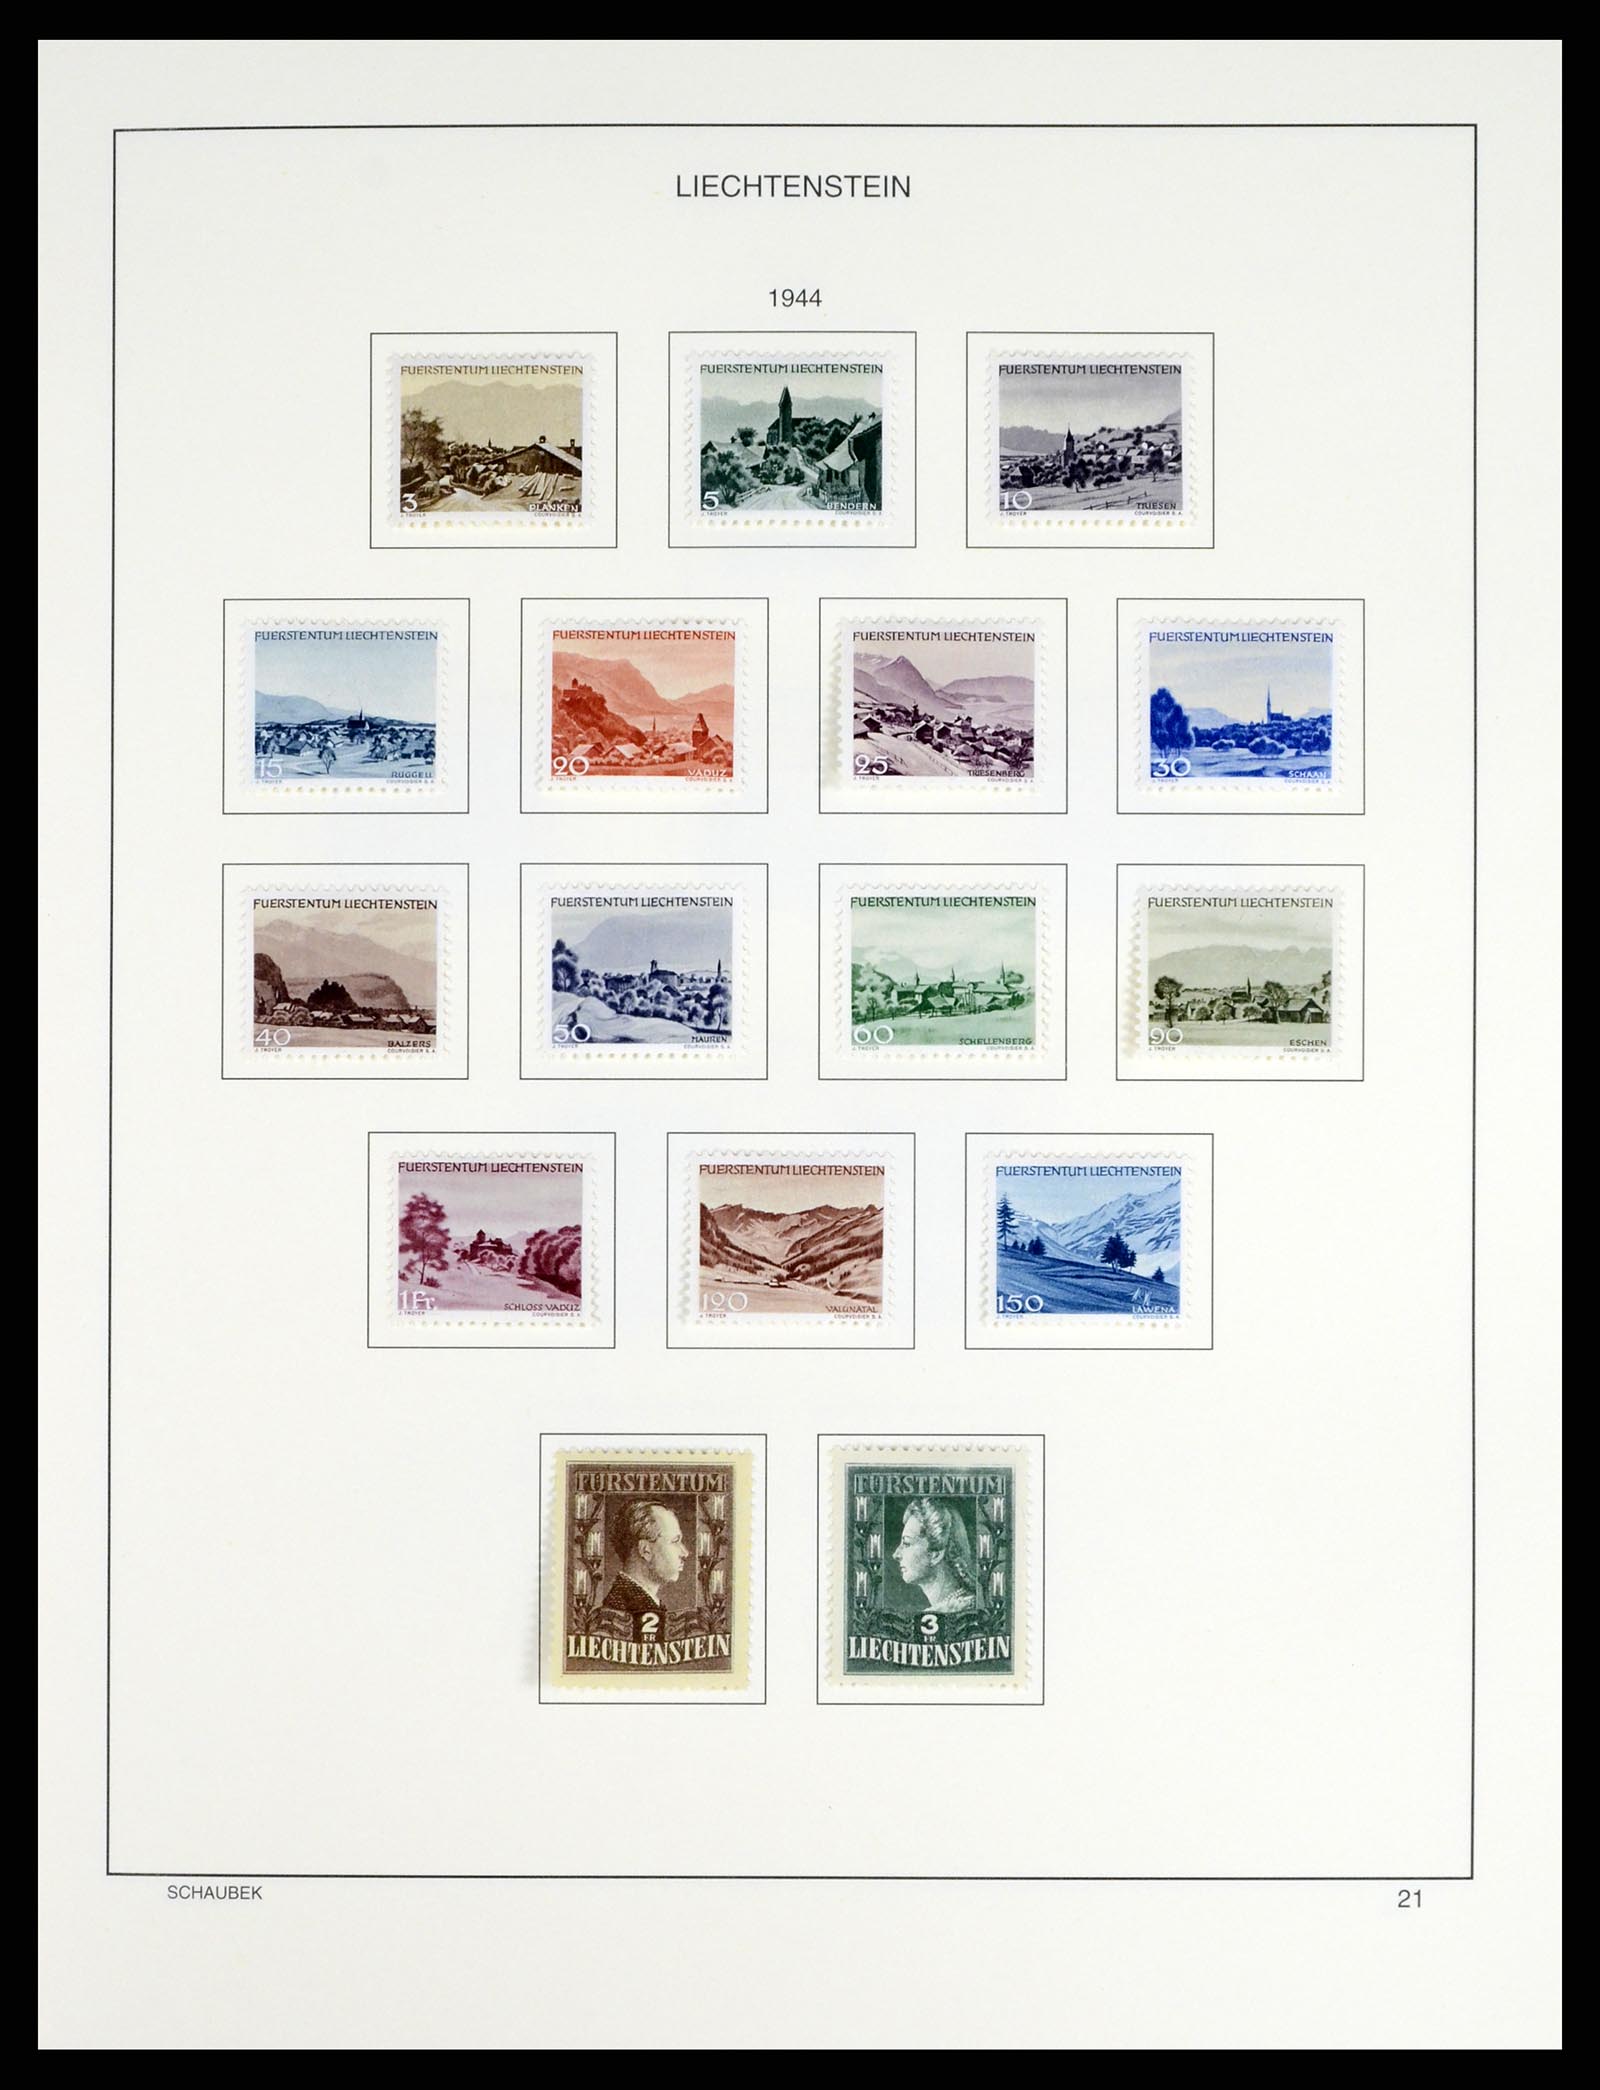 37547 024 - Stamp collection 37547 Liechtenstein 1912-2011.